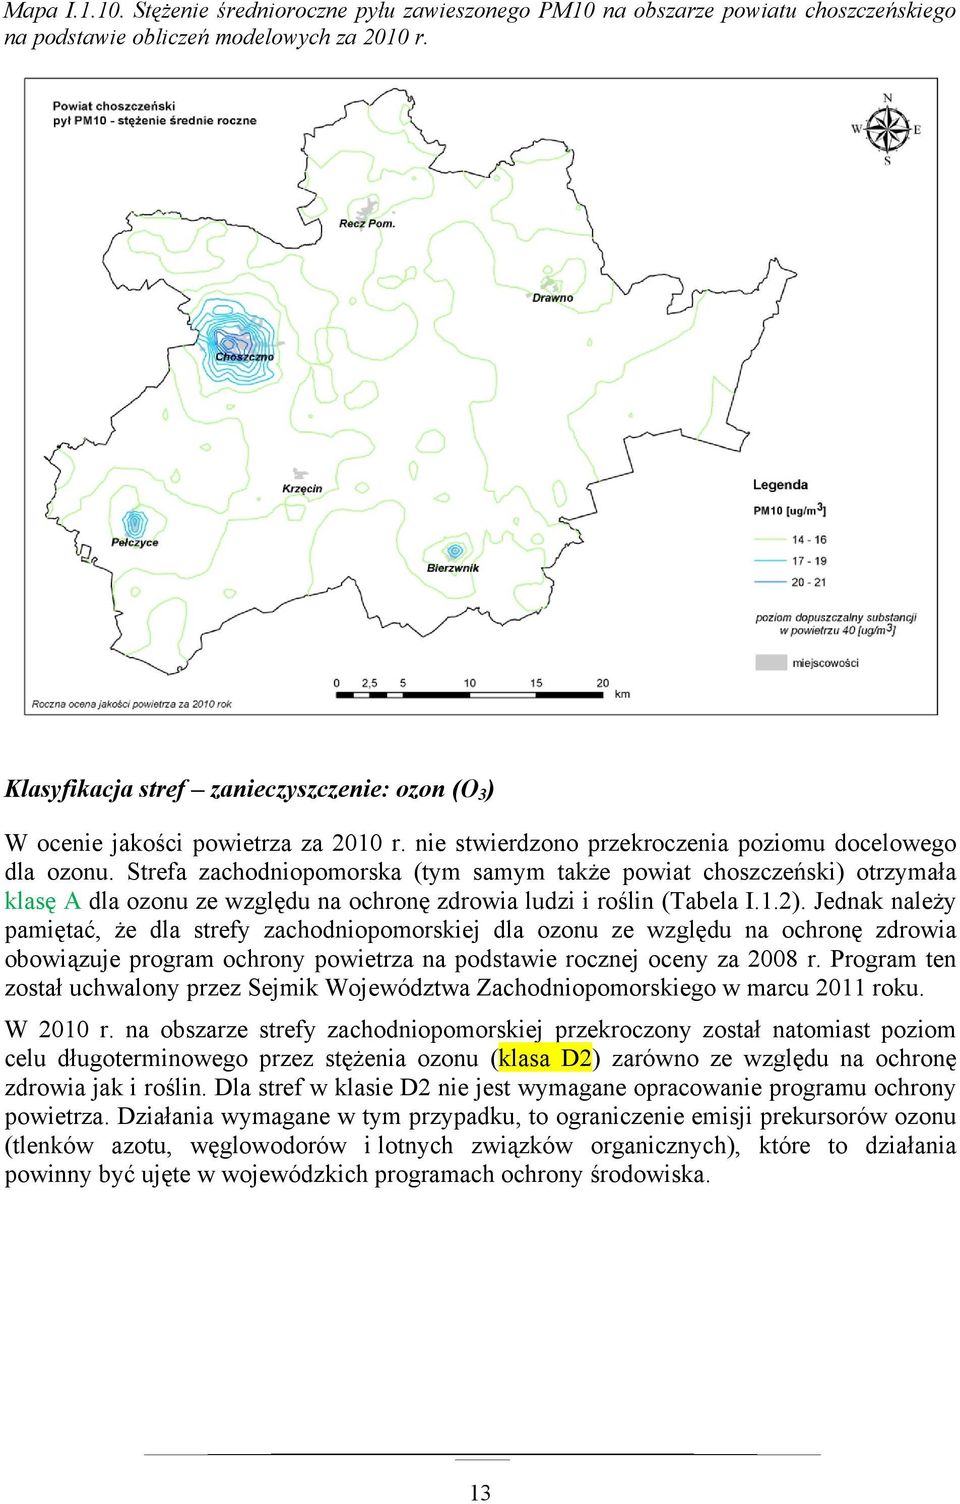 Strefa zachodniopomorska (tym samym także powiat choszczeński) otrzymała klasę A dla ozonu ze względu na ochronę zdrowia ludzi i roślin (Tabela I.1.2).